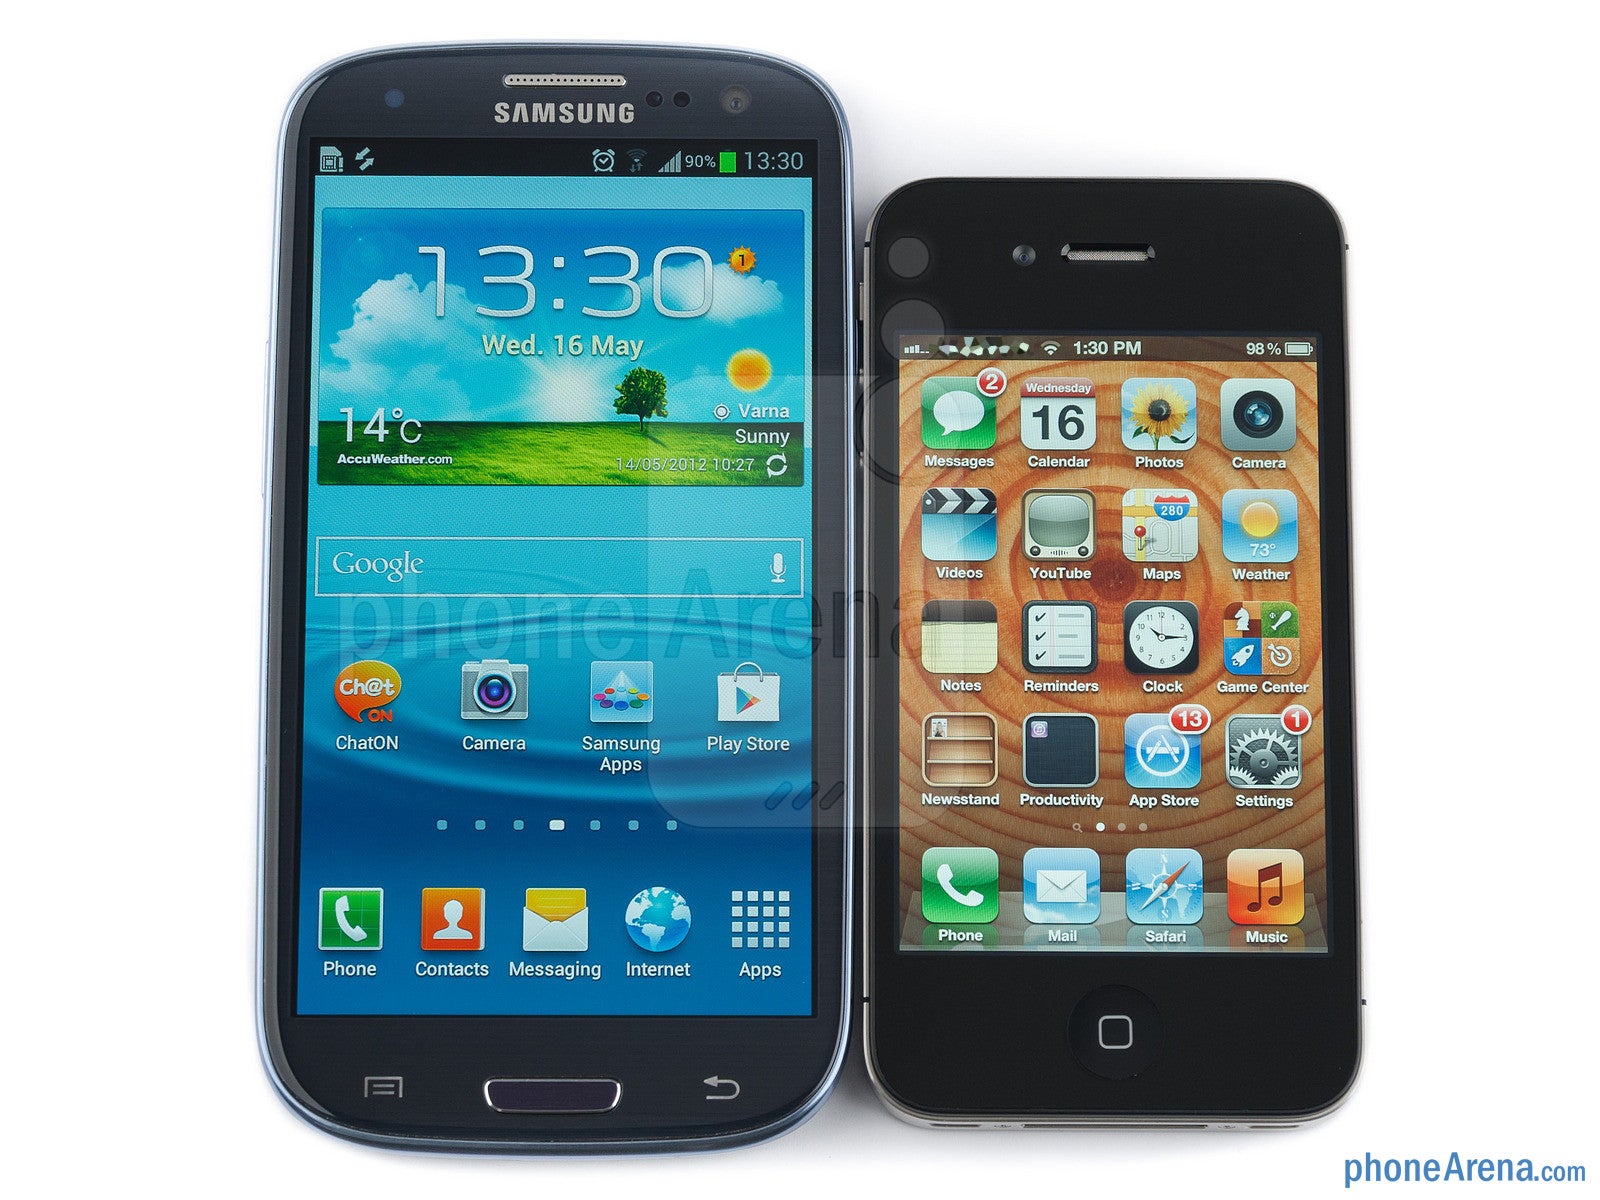 Samsung Galaxy S III vs Apple iPhone 4S